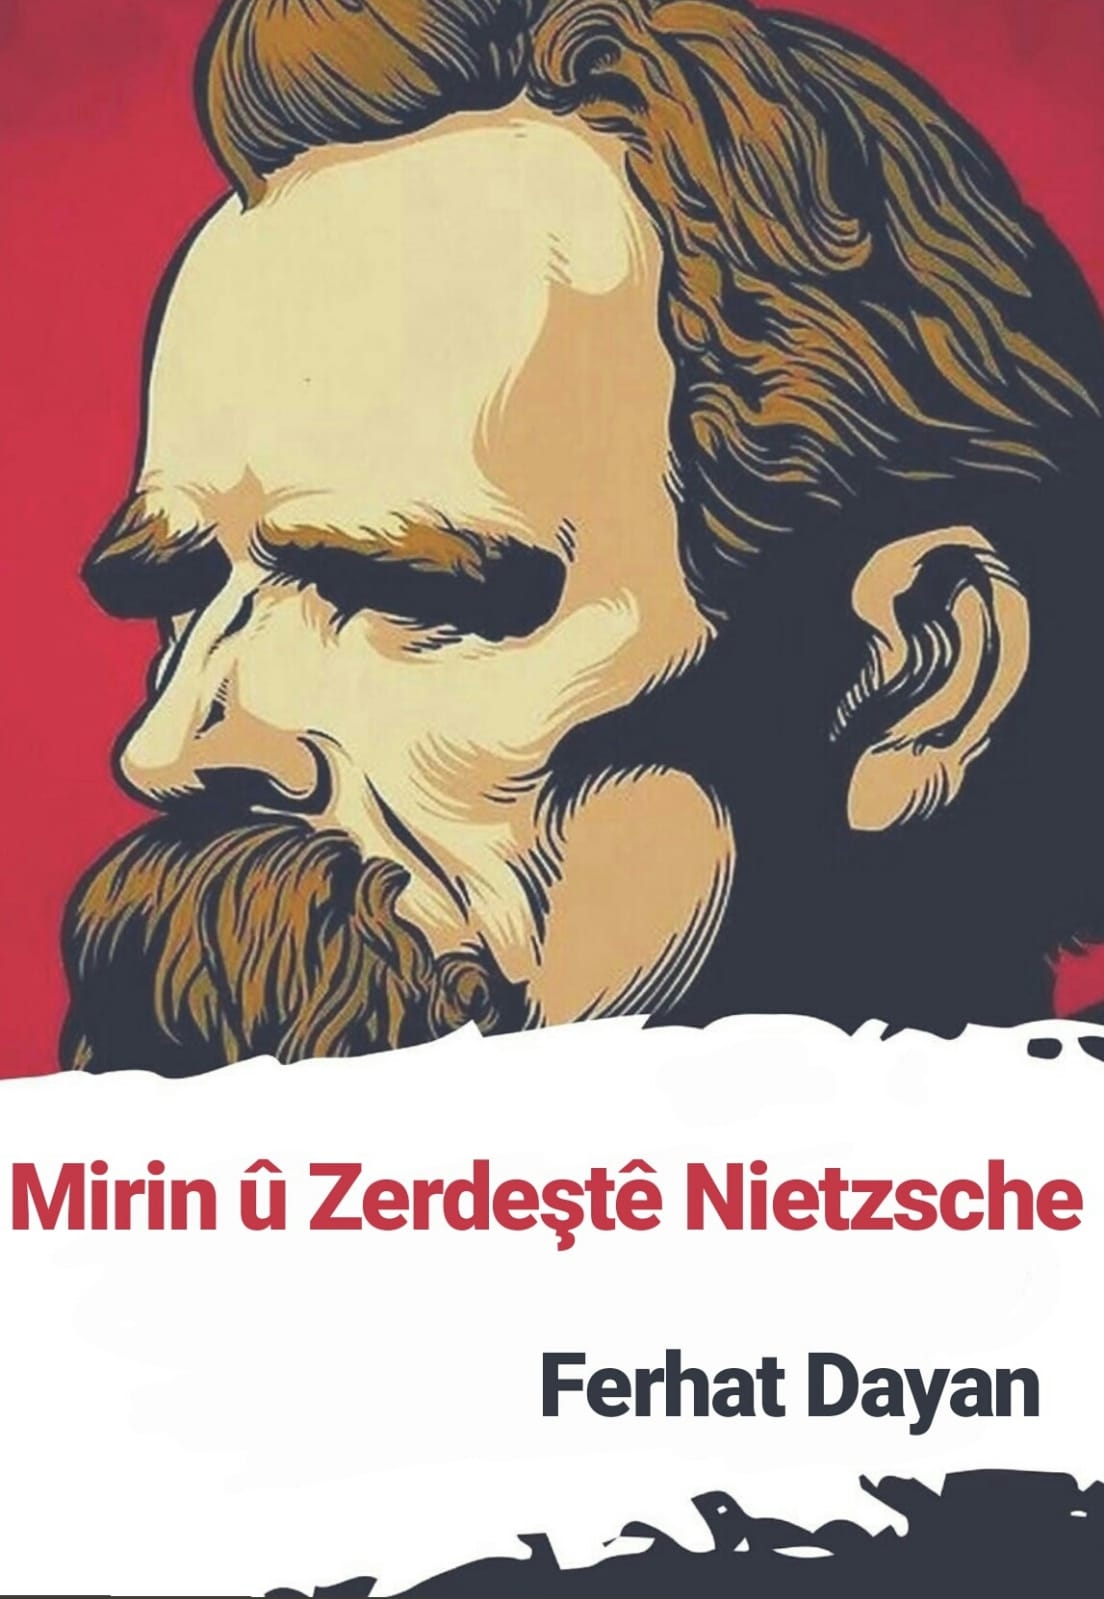 Mirin û Zerdeştê Nietzsche